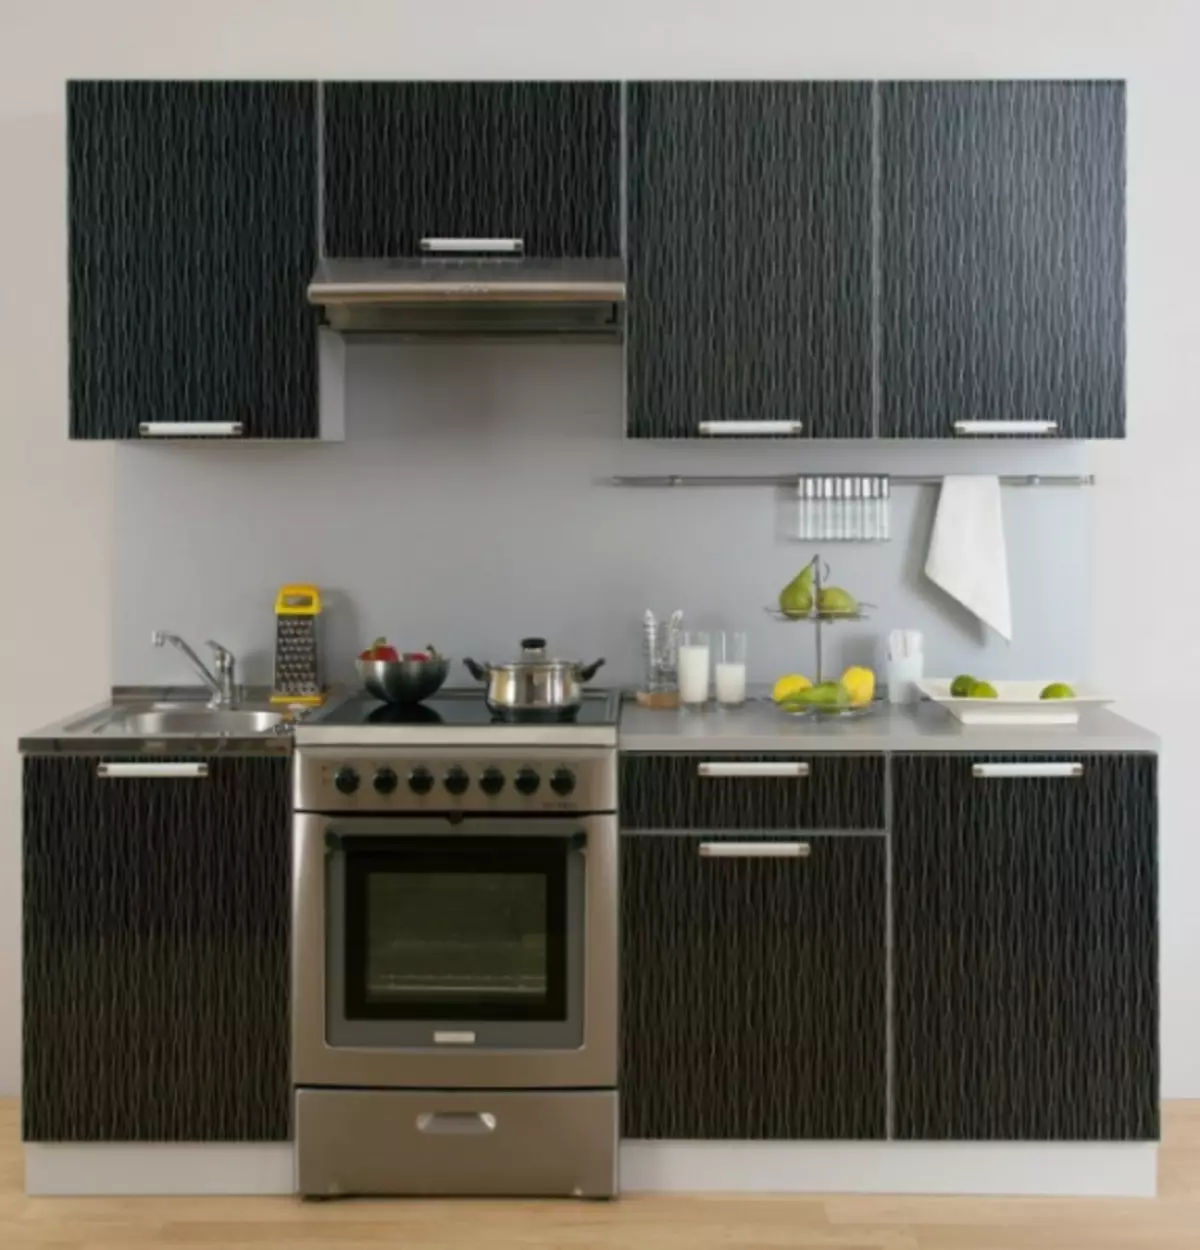 مطبخ صغير للمنزل: الاستعداد مع الراحة في مساحة محدودة (20 صورة)